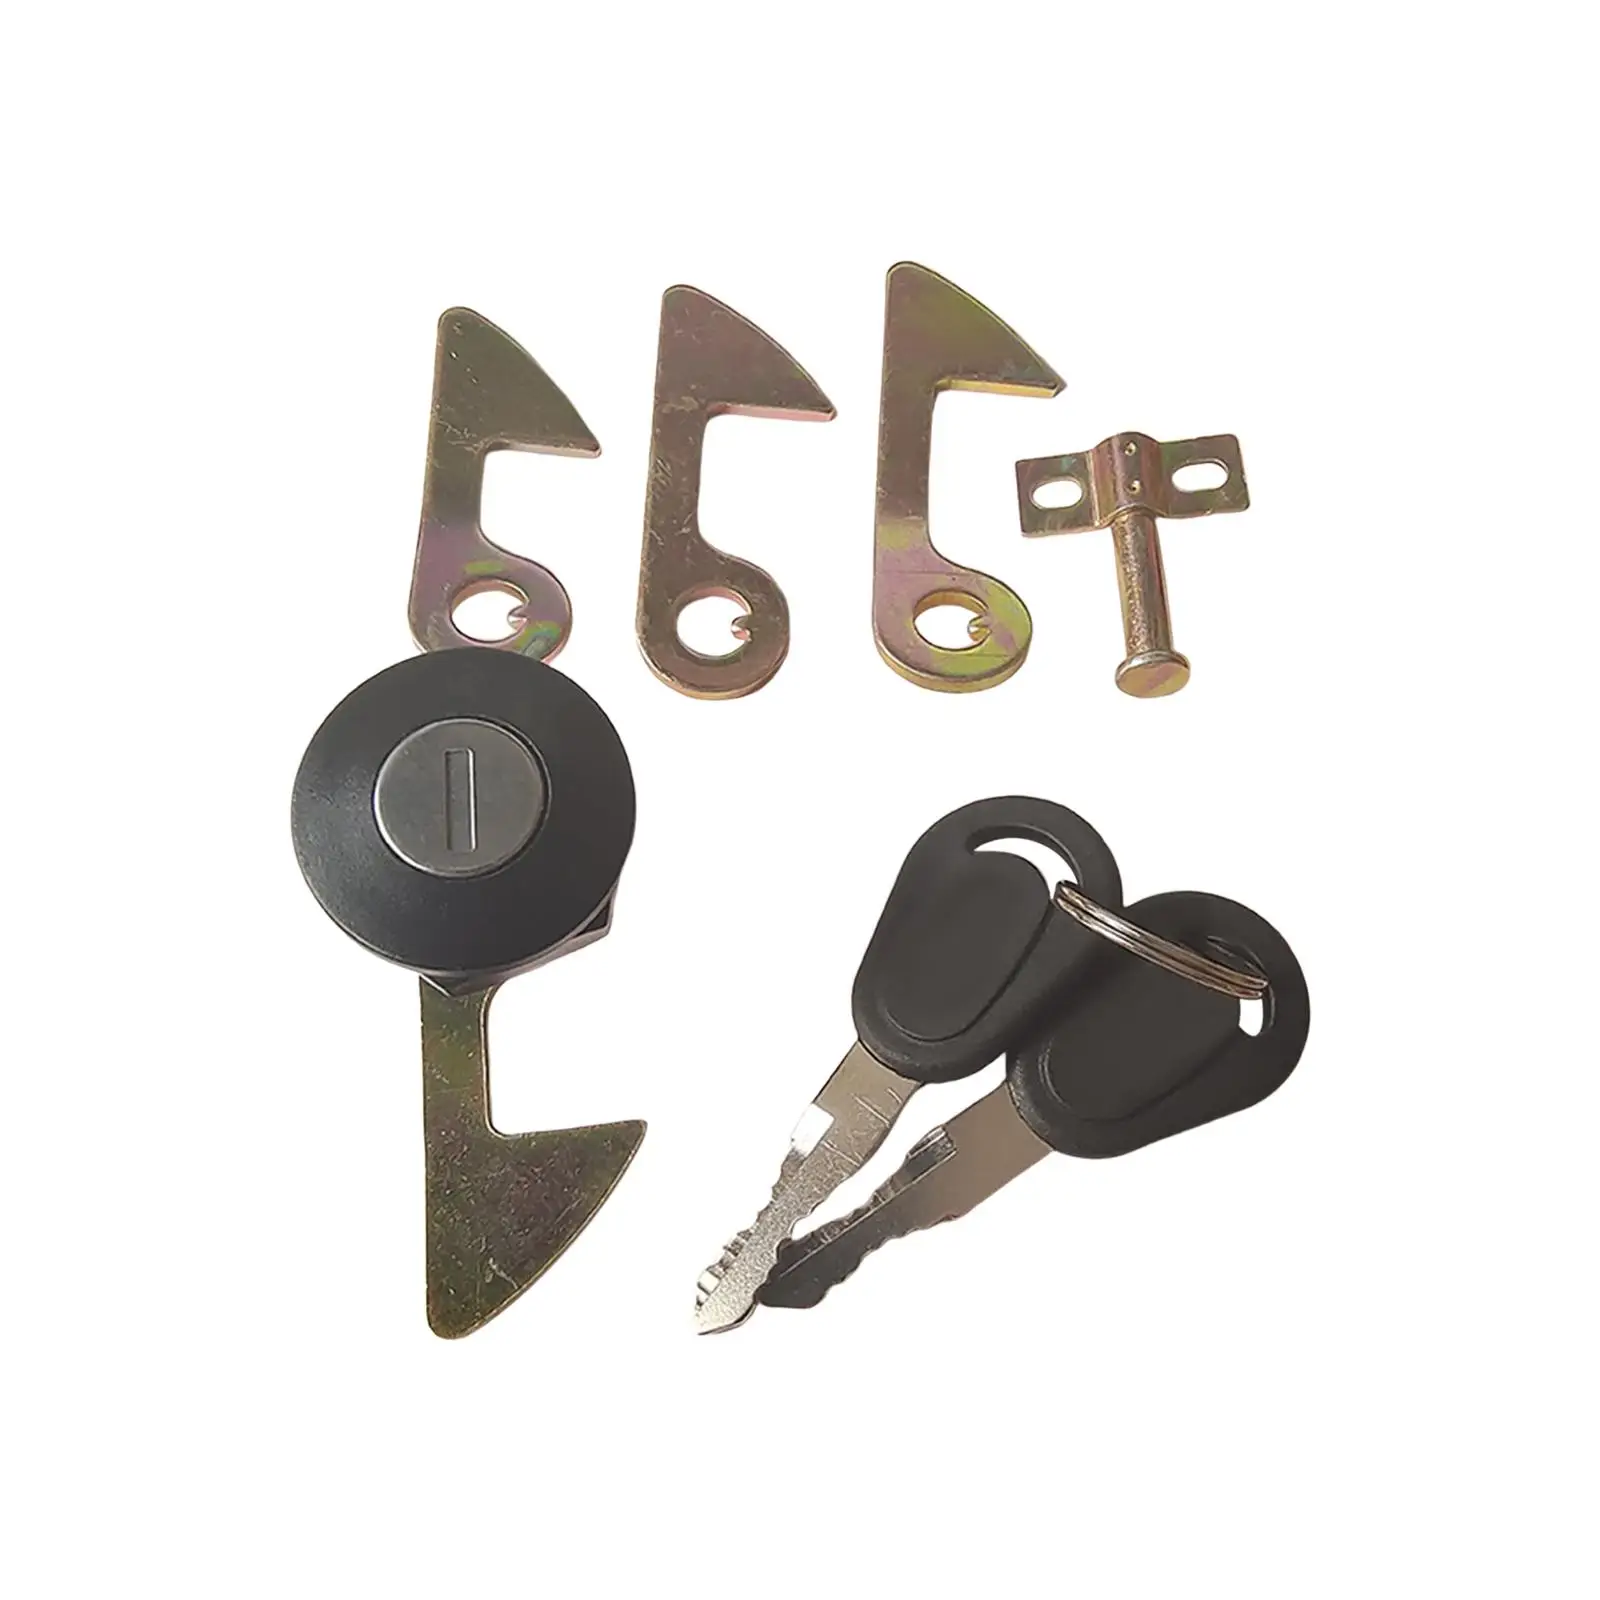 Motorcycle Rear Trunk Lock Replacement 2 Keys 4 Metal Hook Luggage Box Lock